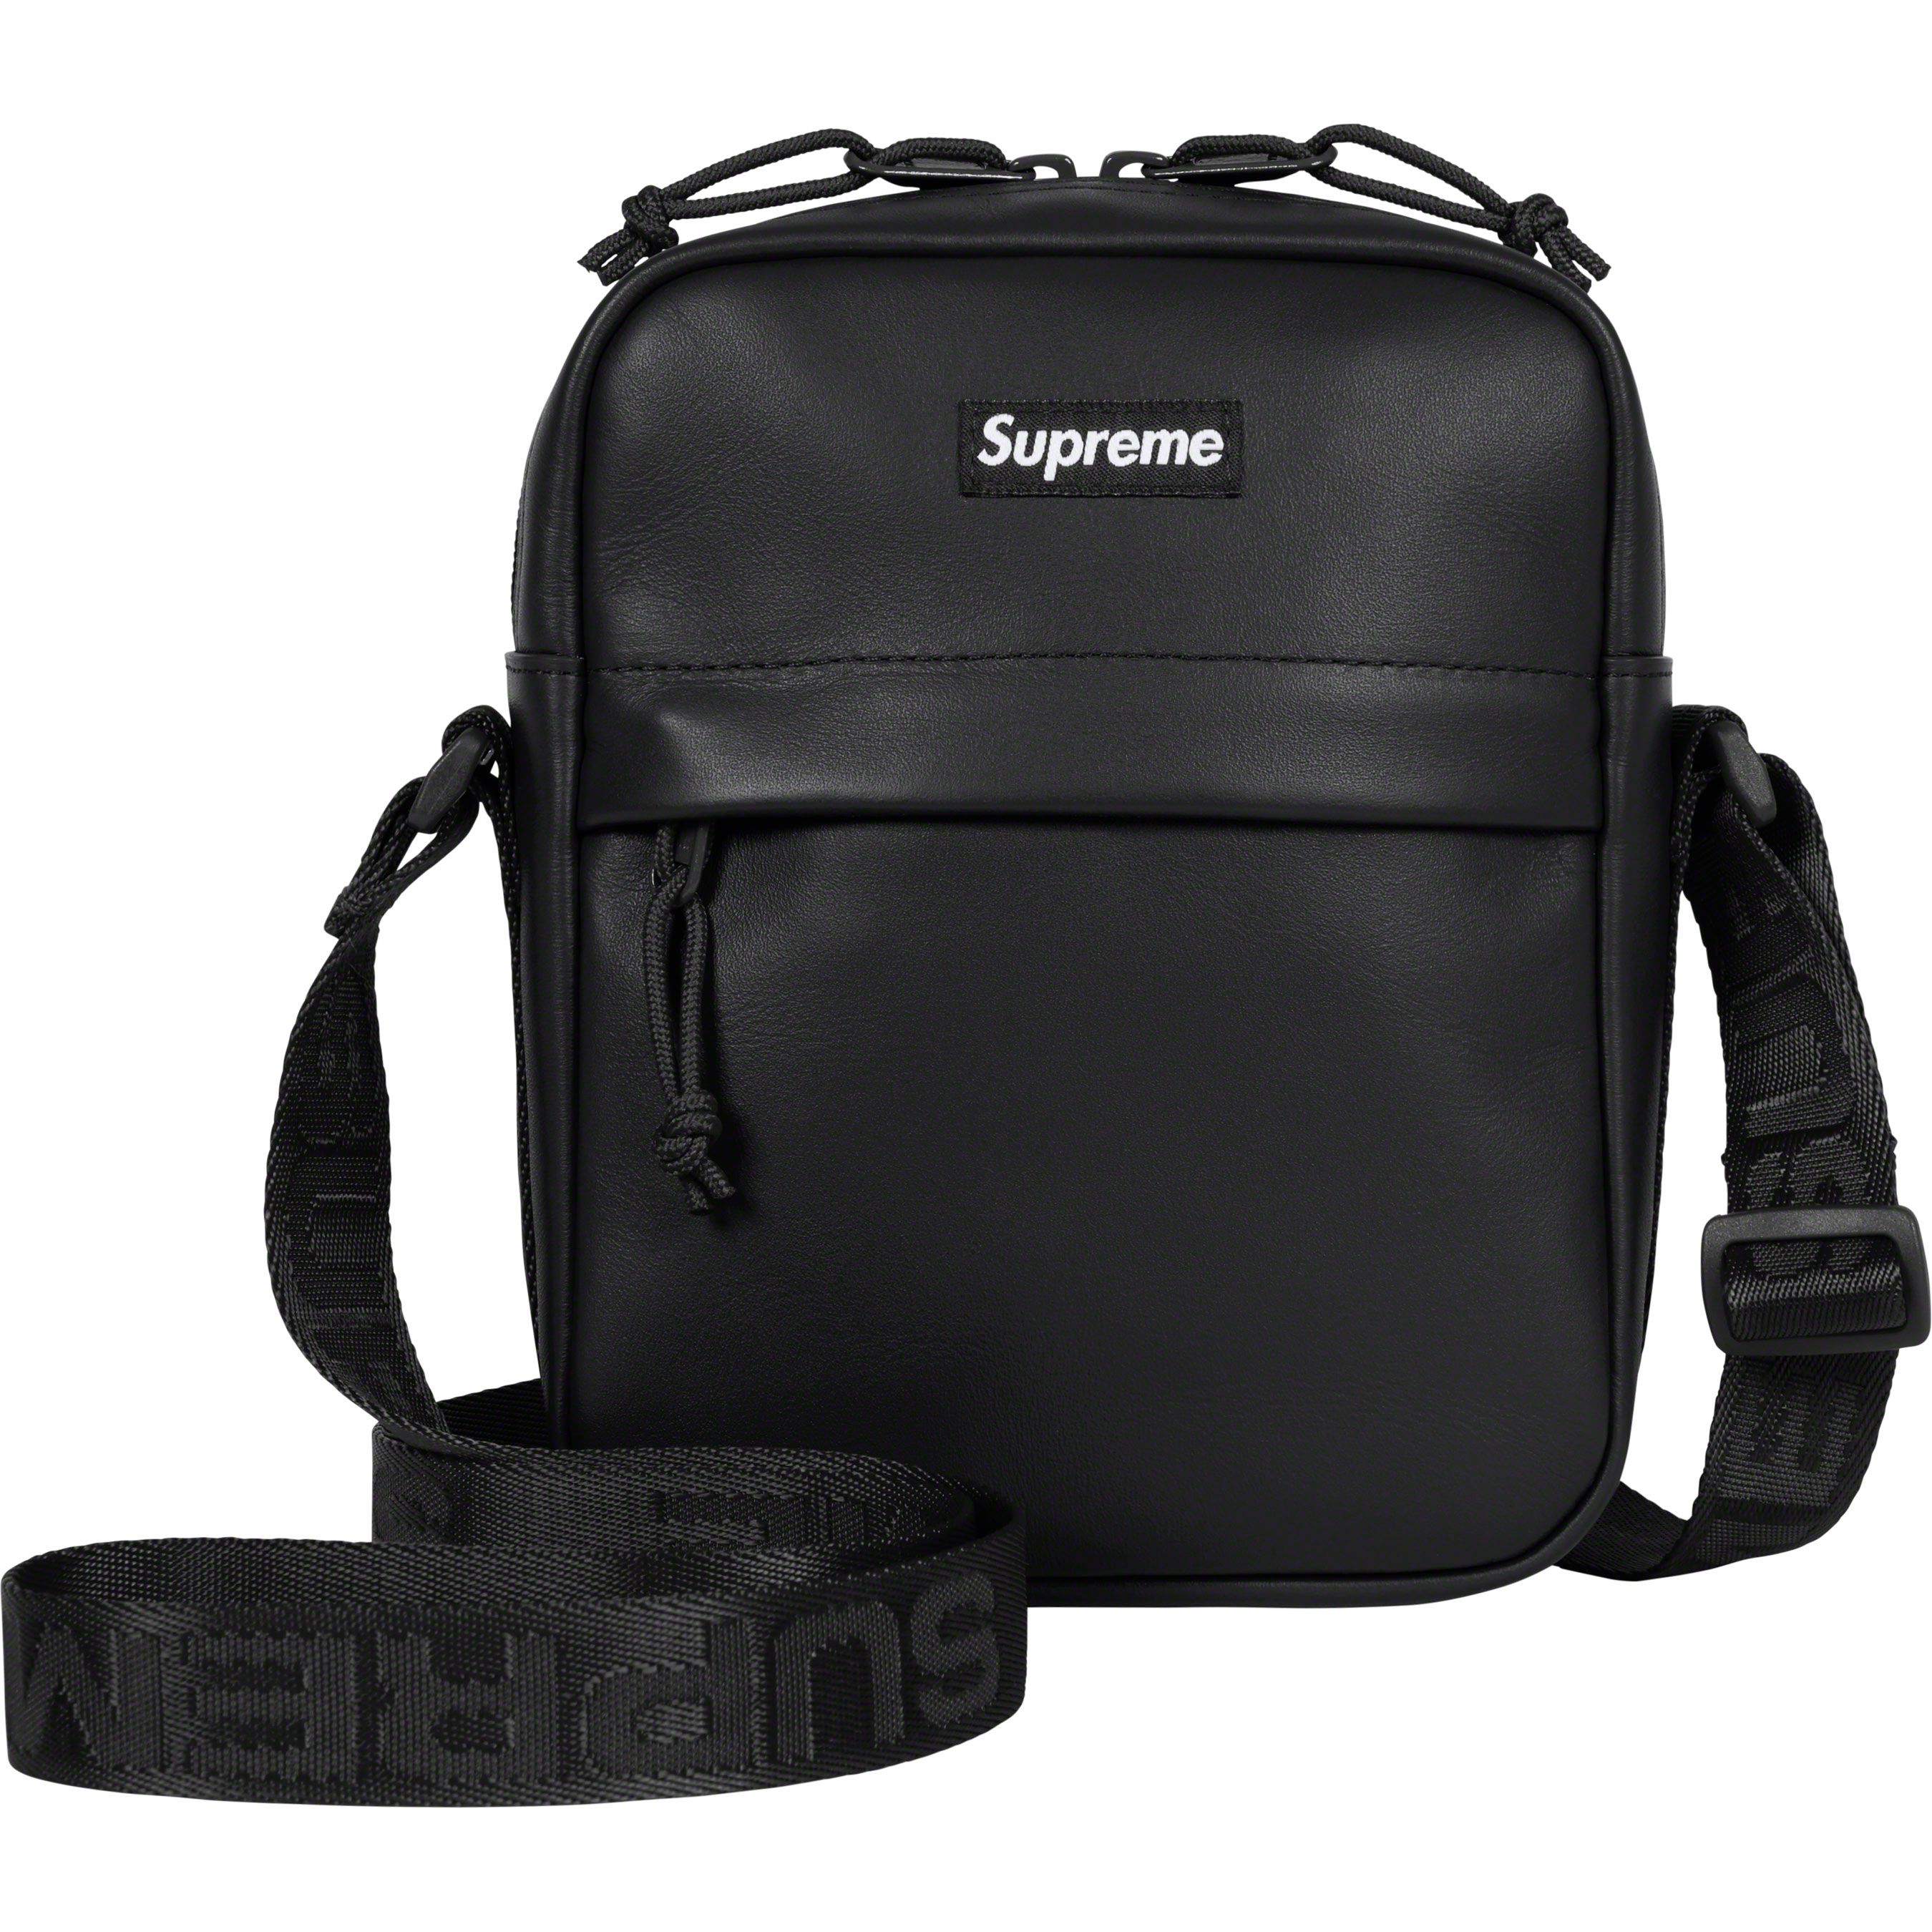 Supreme Shoulder Bags